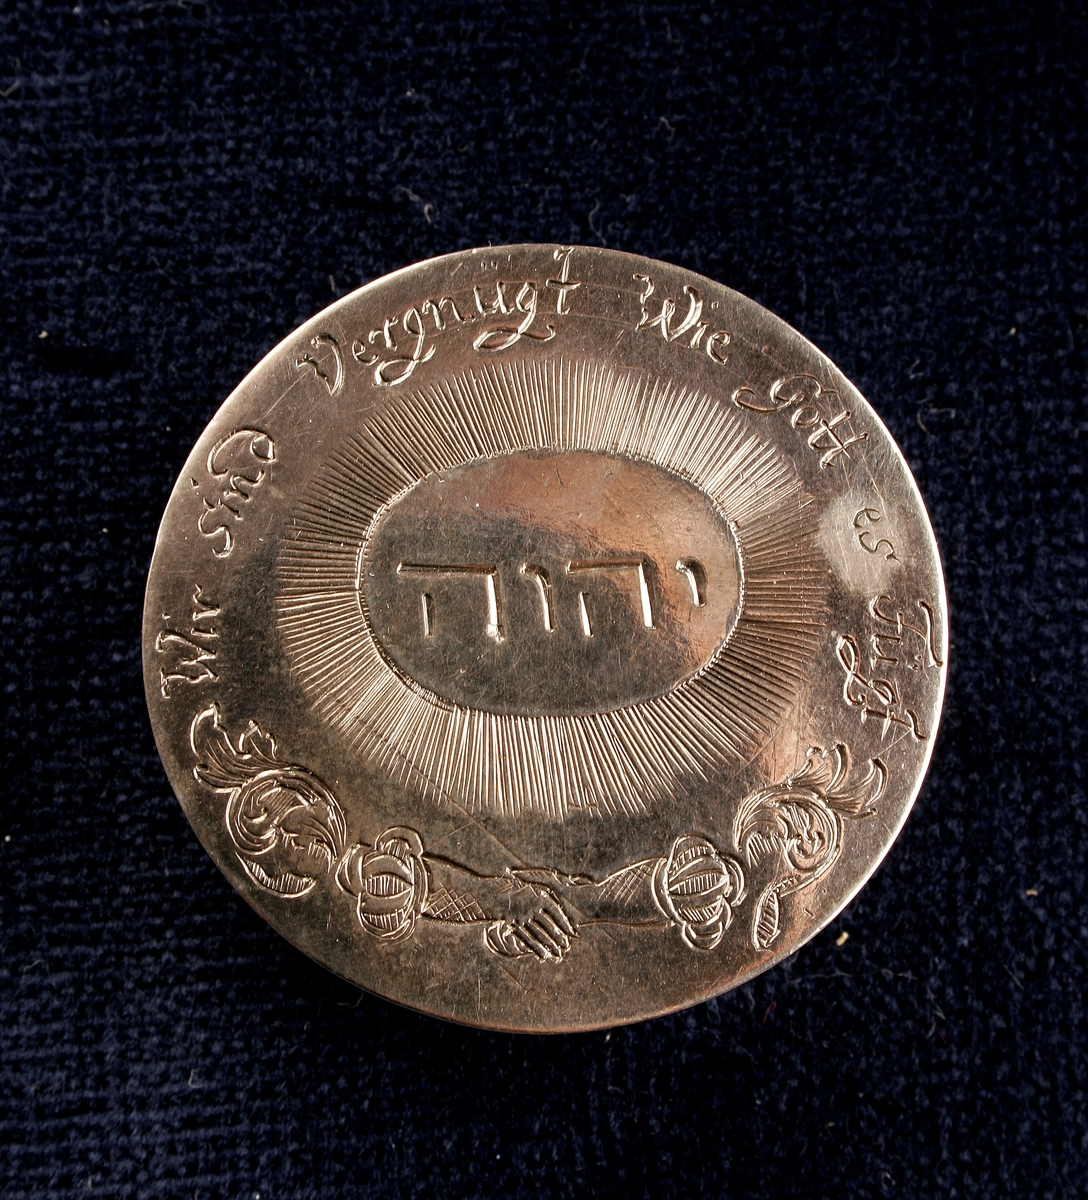 Ask med lock tillverkad av silver, med dekorationer på locket i form ingraverad text på hebreiska och tyska samt blomsterranka. Den tyska texten lyder "Wie sind Vergnugt wie Gott es Fugt".